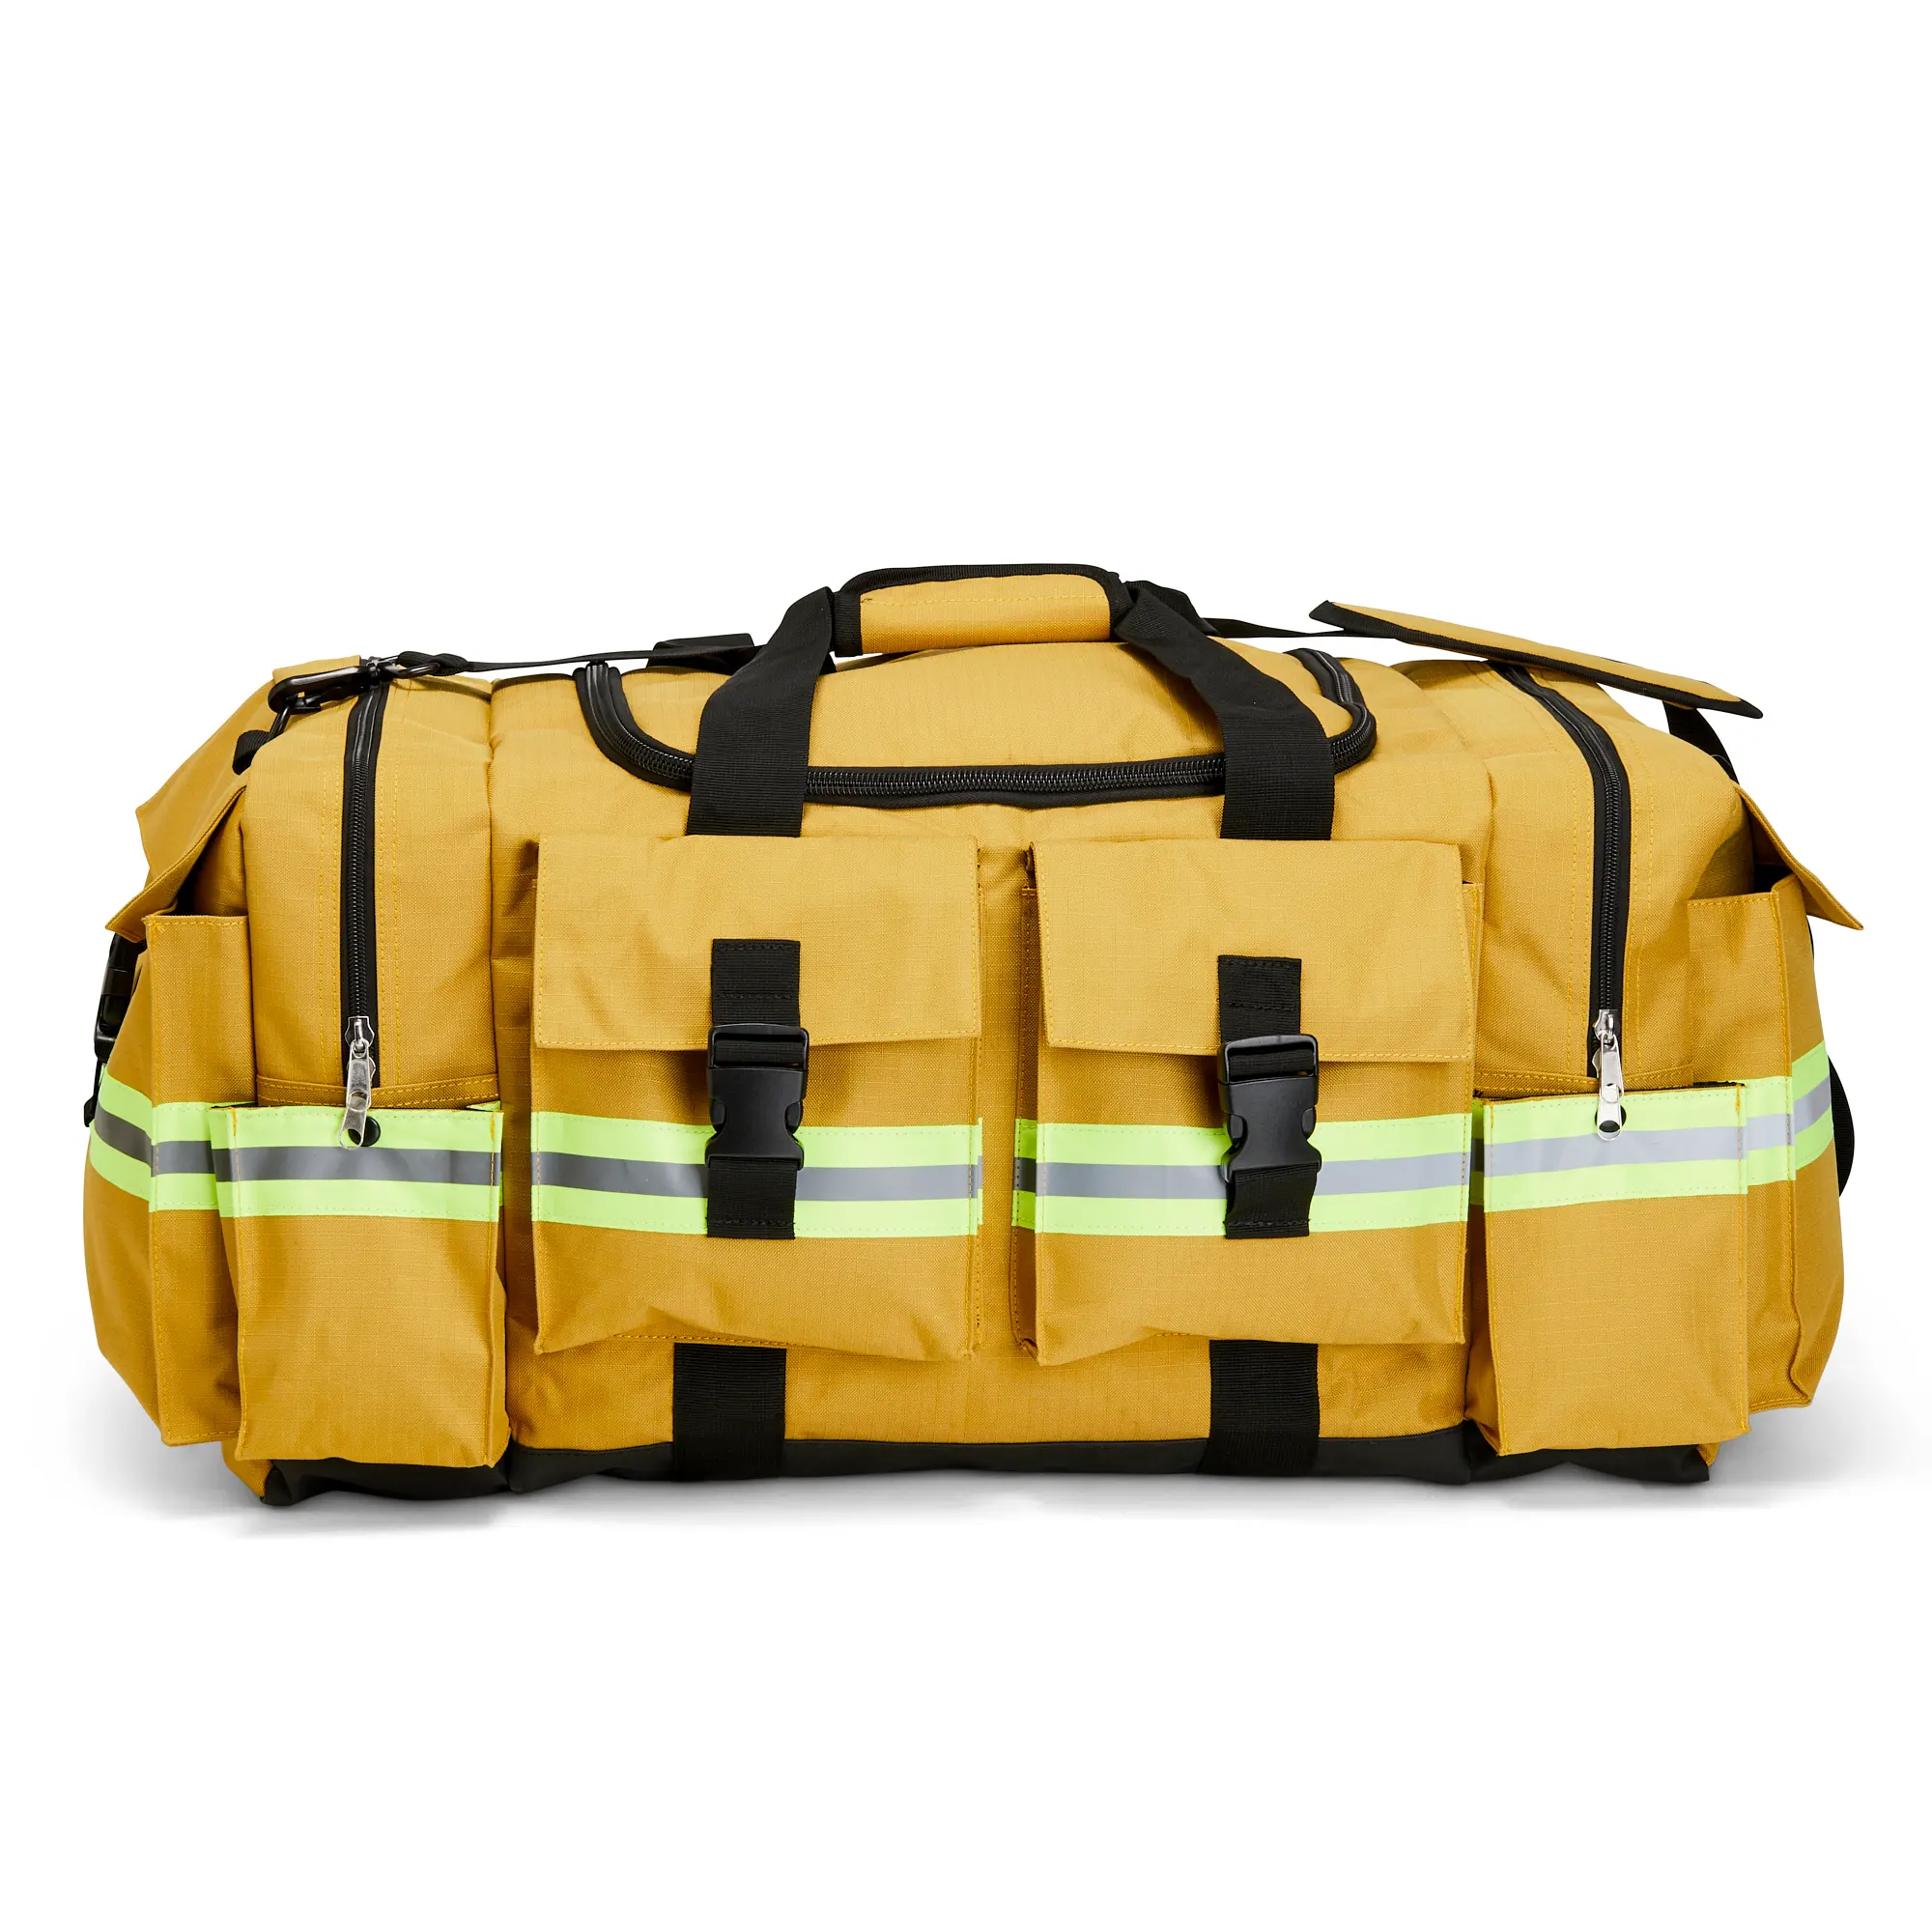 Premium Firefighter Opkomst Fire Gear Bag Veiligheid Plunjezak Met Reflecterende Band Voor Brandweerman Rescue Bag